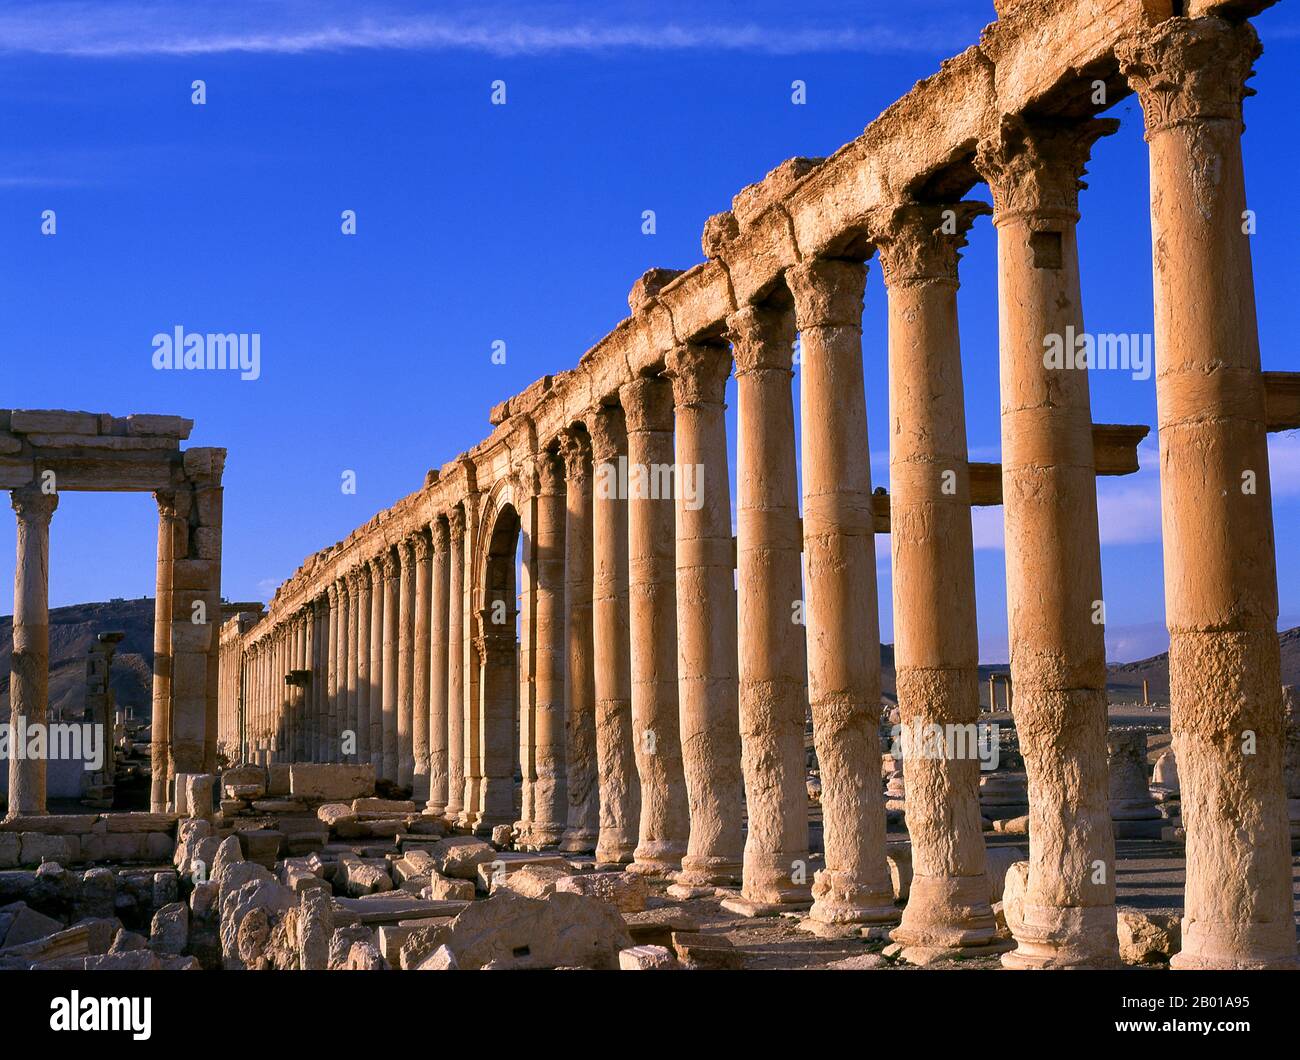 Siria: Il Grande colonnato, Palmyra. Palmyra era un'antica città in Siria. Era una città importante nella Siria centrale, situata in un'oasi 215 km a nord-est di Damasco e 180 km a sud-ovest dell'Eufrate a Deir ez-Zor. Era stata a lungo una città carovana vitale per i viaggiatori che attraversavano il deserto siriano ed era conosciuta come la sposa del deserto. Il primo riferimento documentato alla città con il suo nome semitico Tadmor, Tadmur o Tudmur (che significa 'la città che si respinge' in Amorite e 'la città indomitabile' in Aramaico) è registrato in compresse babilonesi trovati in Mari. Foto Stock